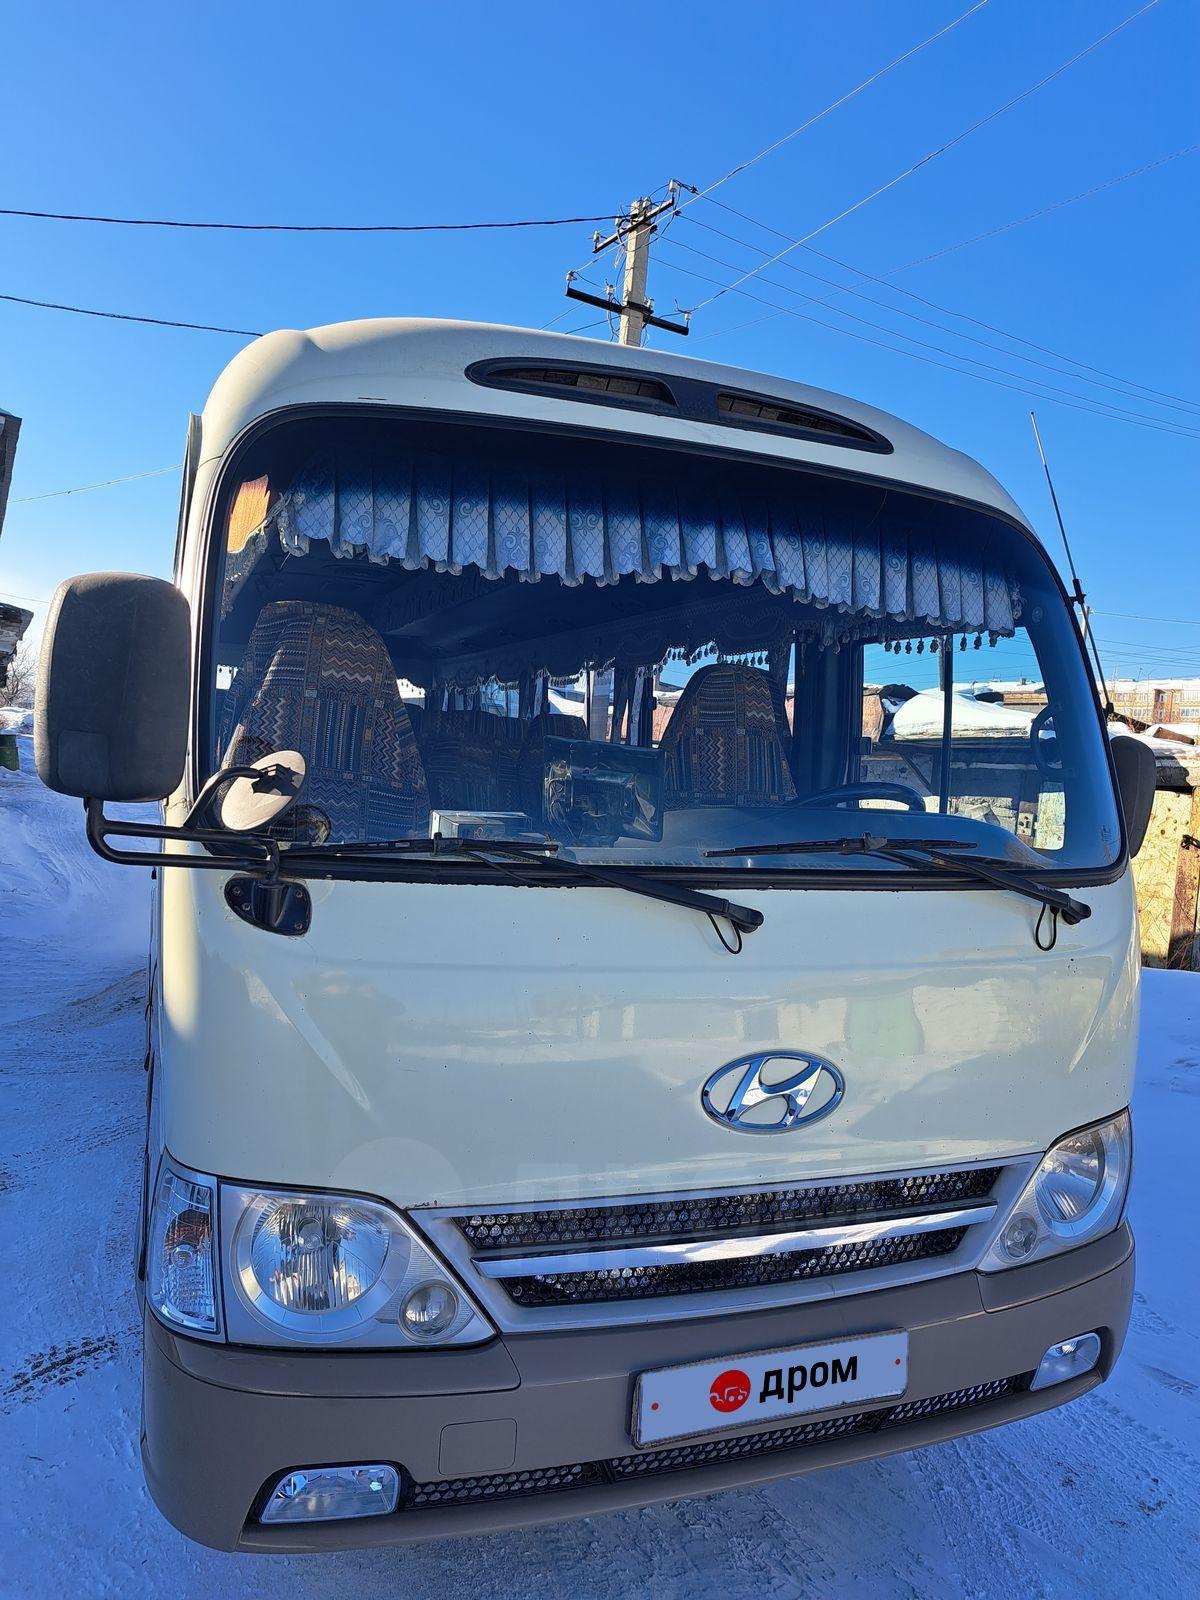 Купить Hyundai County Туристический автобус 2009 года в Нижнеудинске: цена  1 800 000 руб., дизель, механика - Автобусы